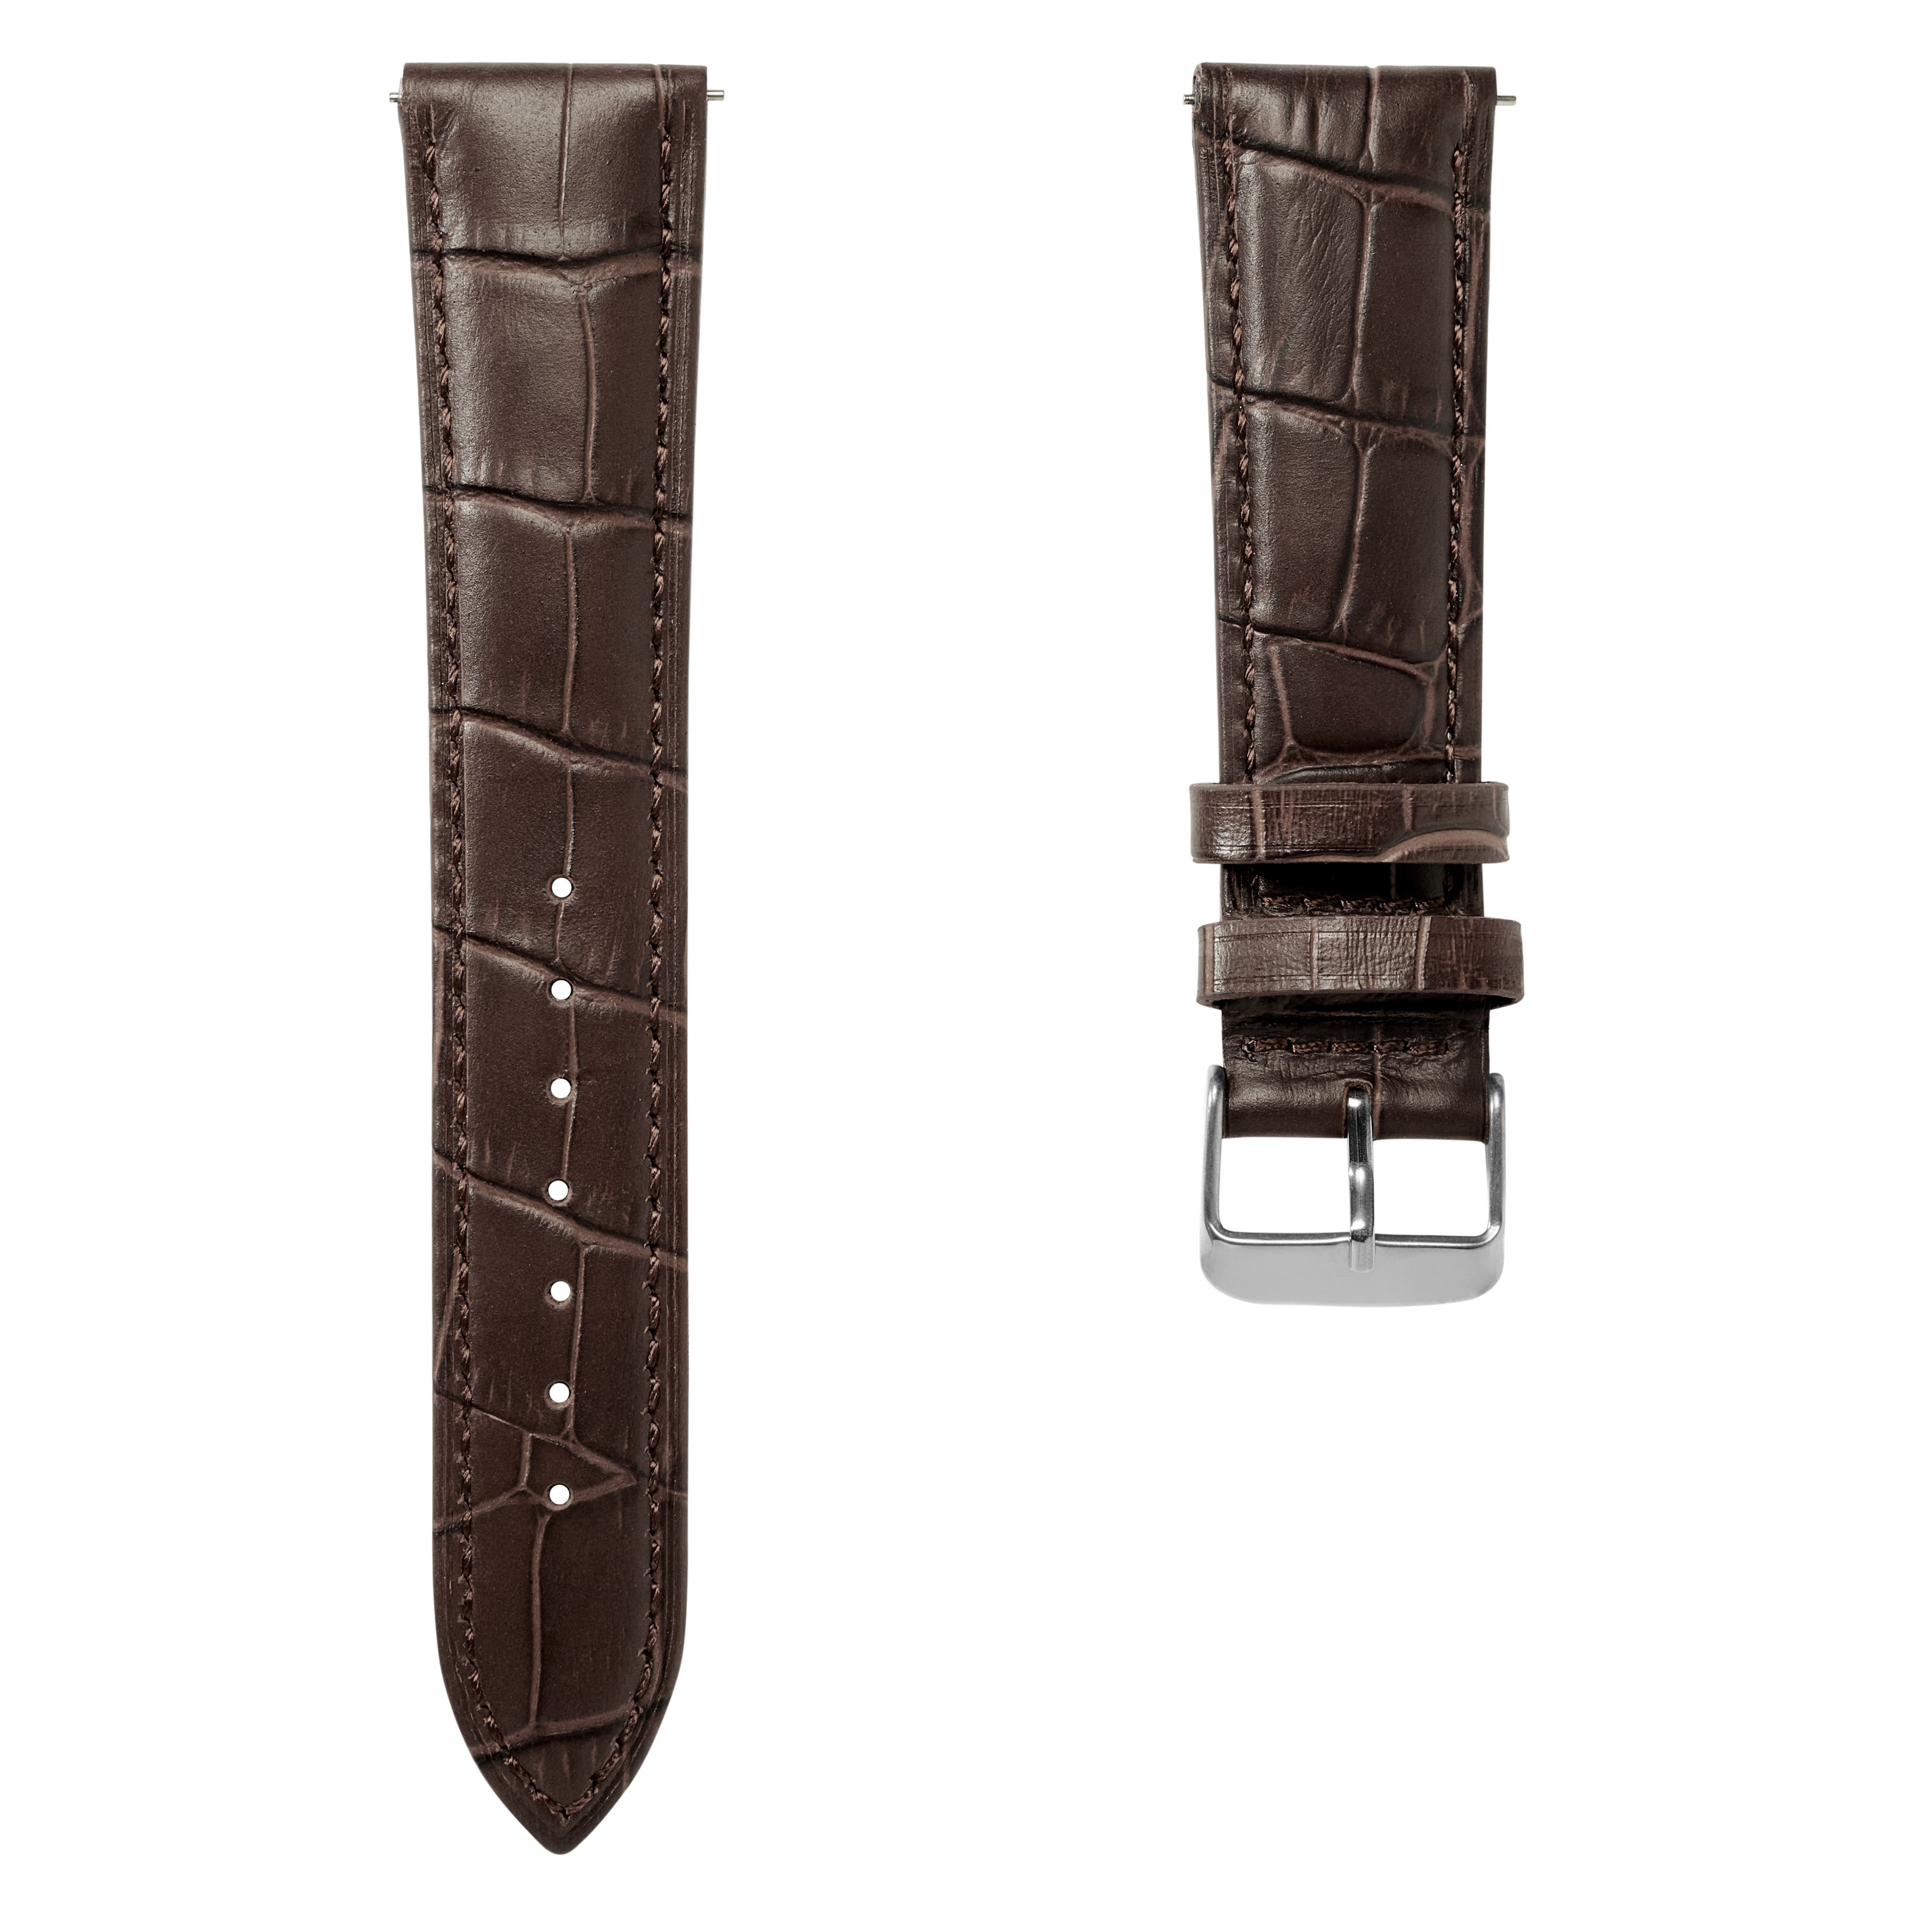 Ciemnobrązowy 21 mm skórzany pasek do zegarka z tłoczonym wzorem krokodylem i srebrzystą klamrą – szybki w zmianie